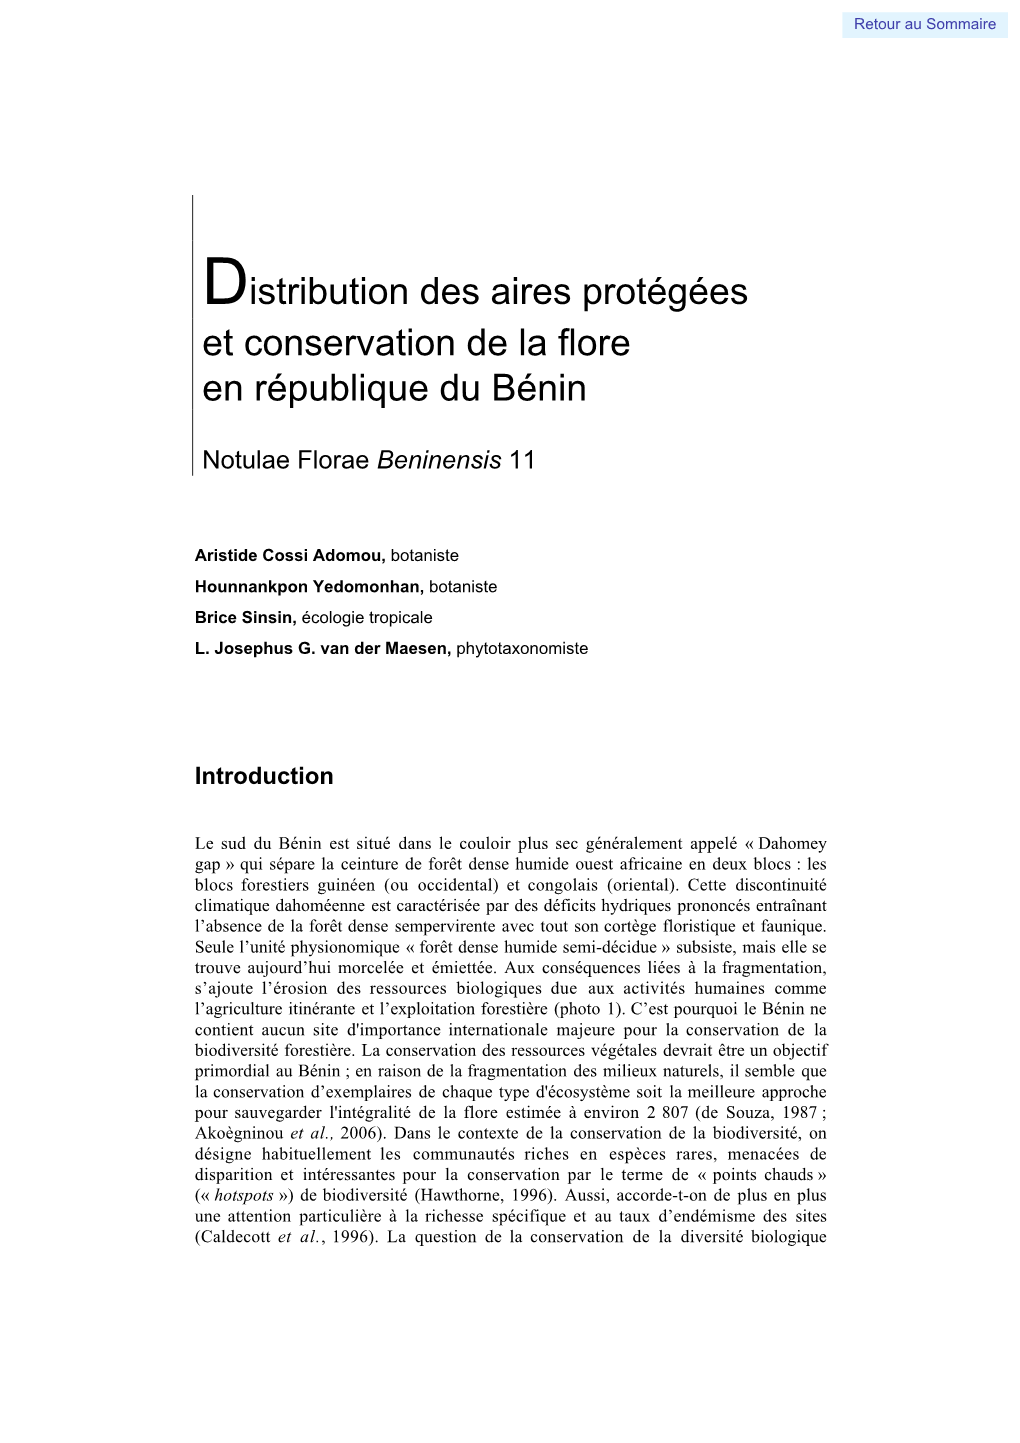 Distribution Des Aires Protégées Et Conservation De La Flore En République Du Bénin